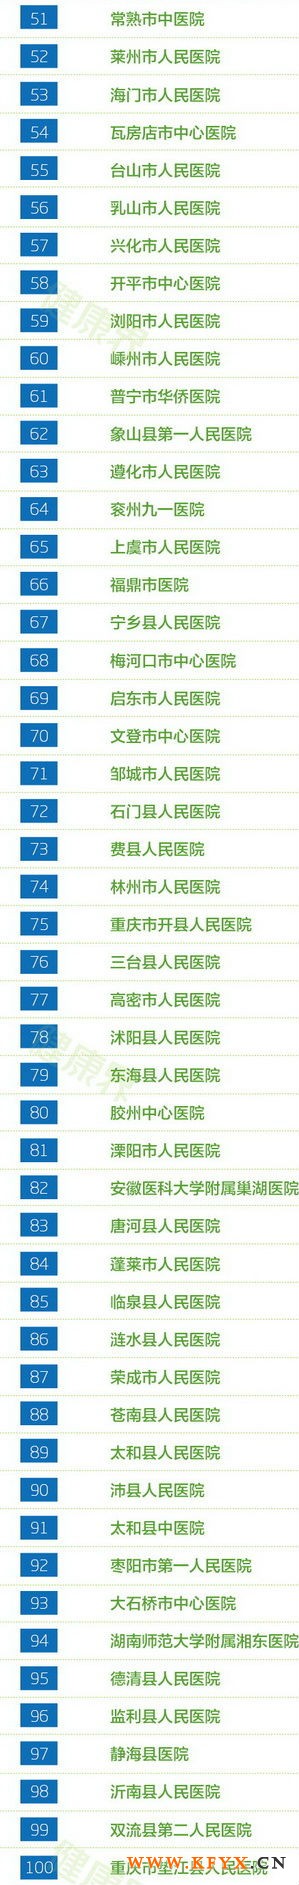 2013年中国县级医院竞争力100强排行